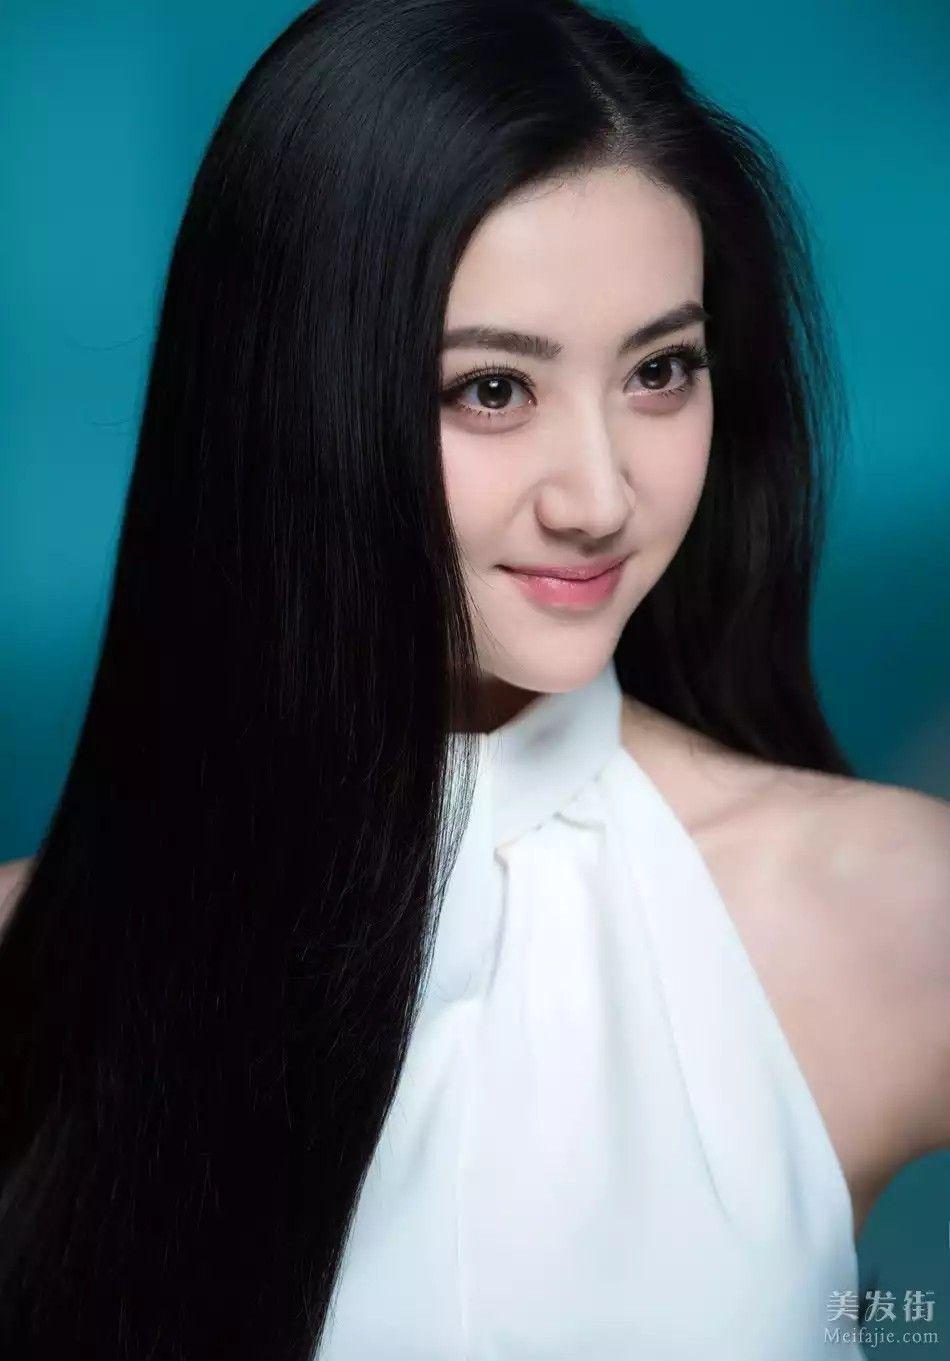 Jing Tian HD Wallpapers - Top Free Jing Tian HD Backgrounds ...